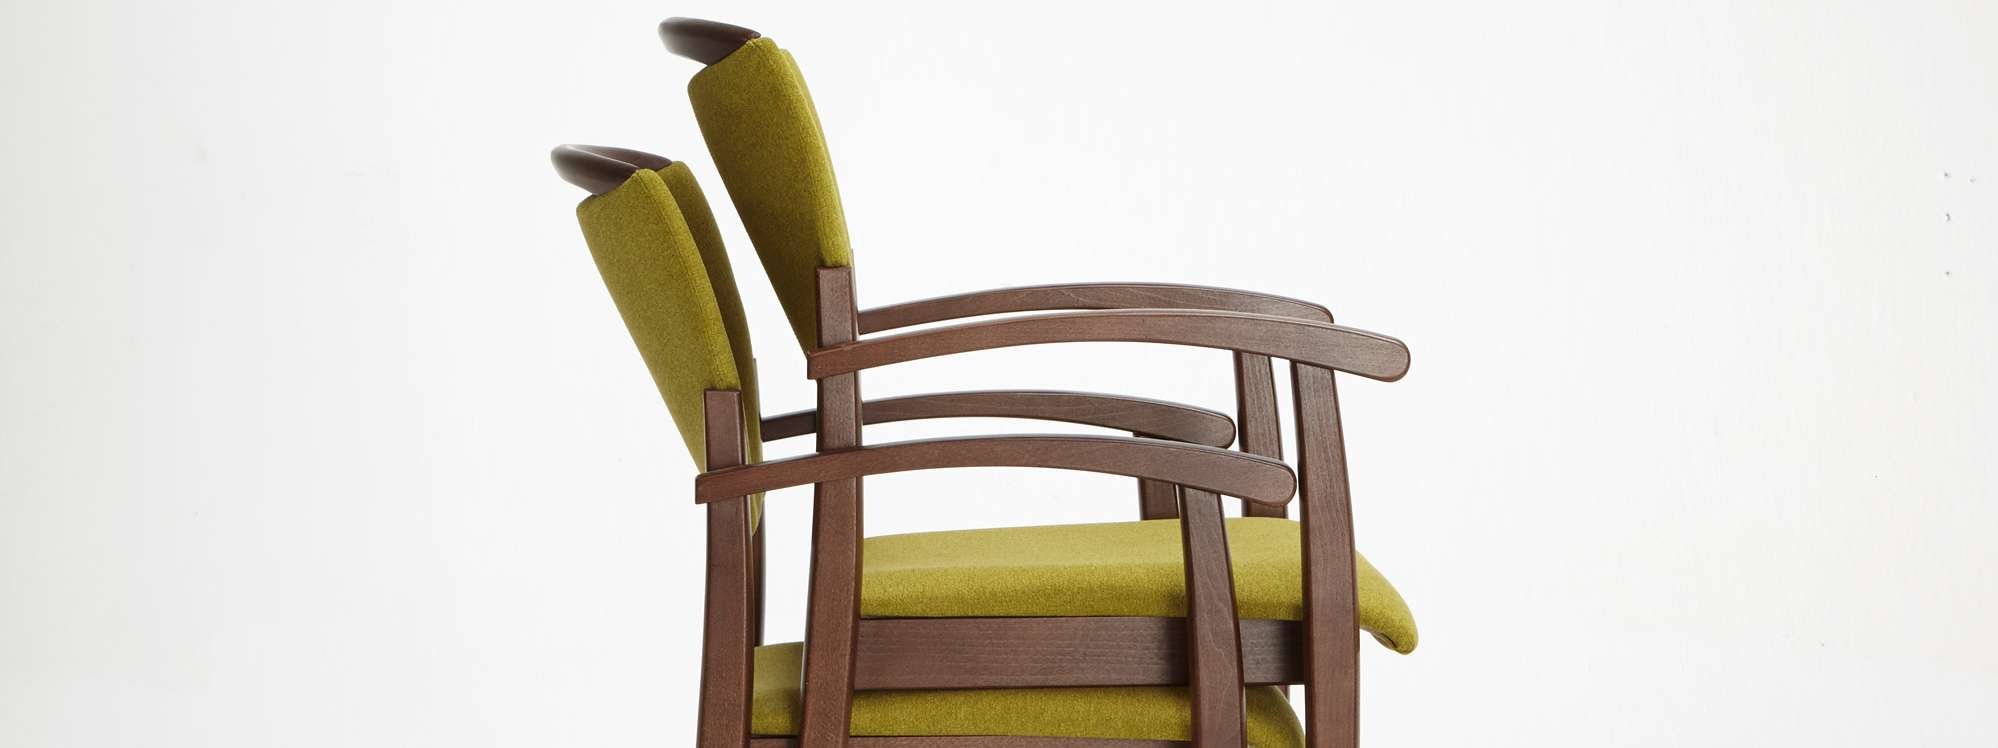 Sztaplowane krzesła Fena ułatwiają utrzymanie czystości w pomieszczeniu